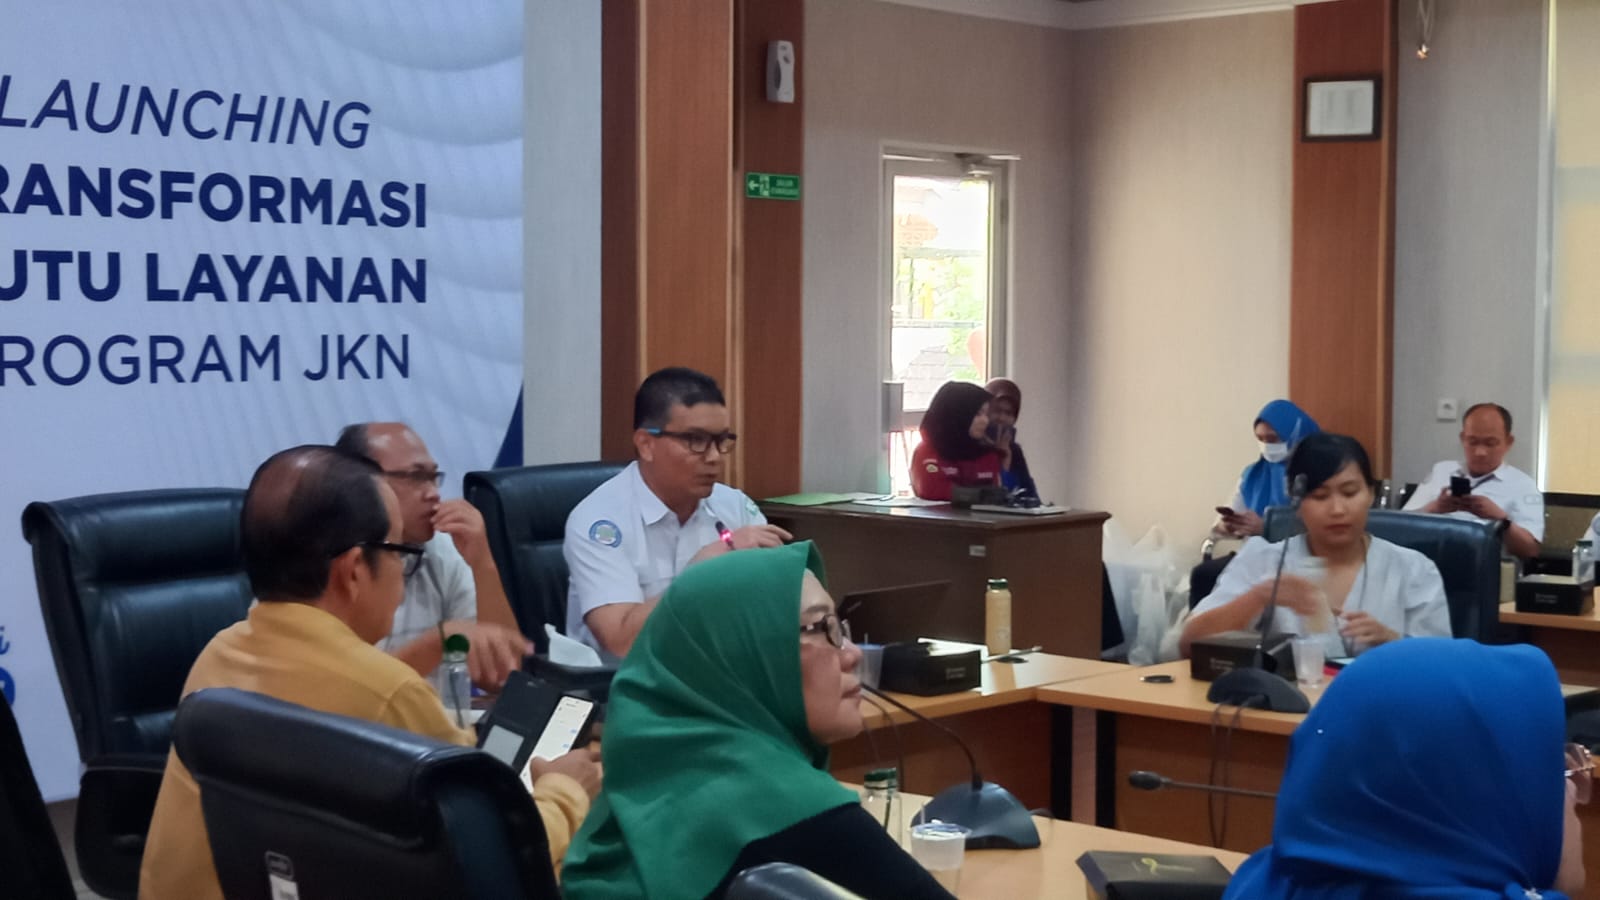 Launching Transformasi Mutu Layanan JKN. BPJS Bengkulu. Foto, Alwin/BN